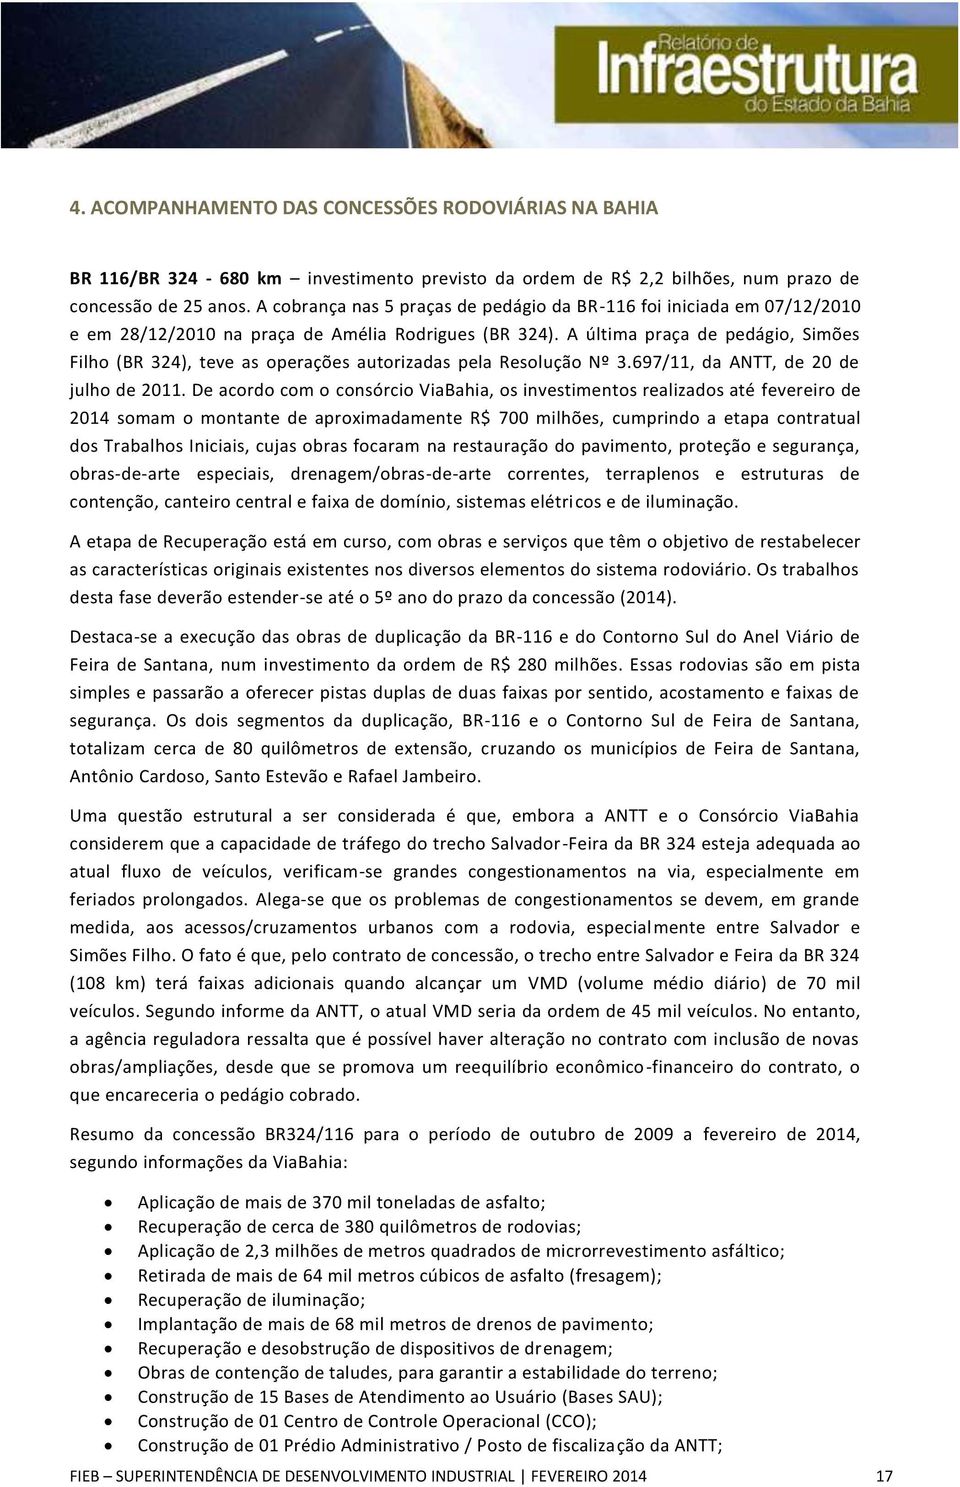 A última praça de pedágio, Simões Filho (BR 324), teve as operações autorizadas pela Resolução Nº 3.697/11, da ANTT, de 20 de julho de 2011.